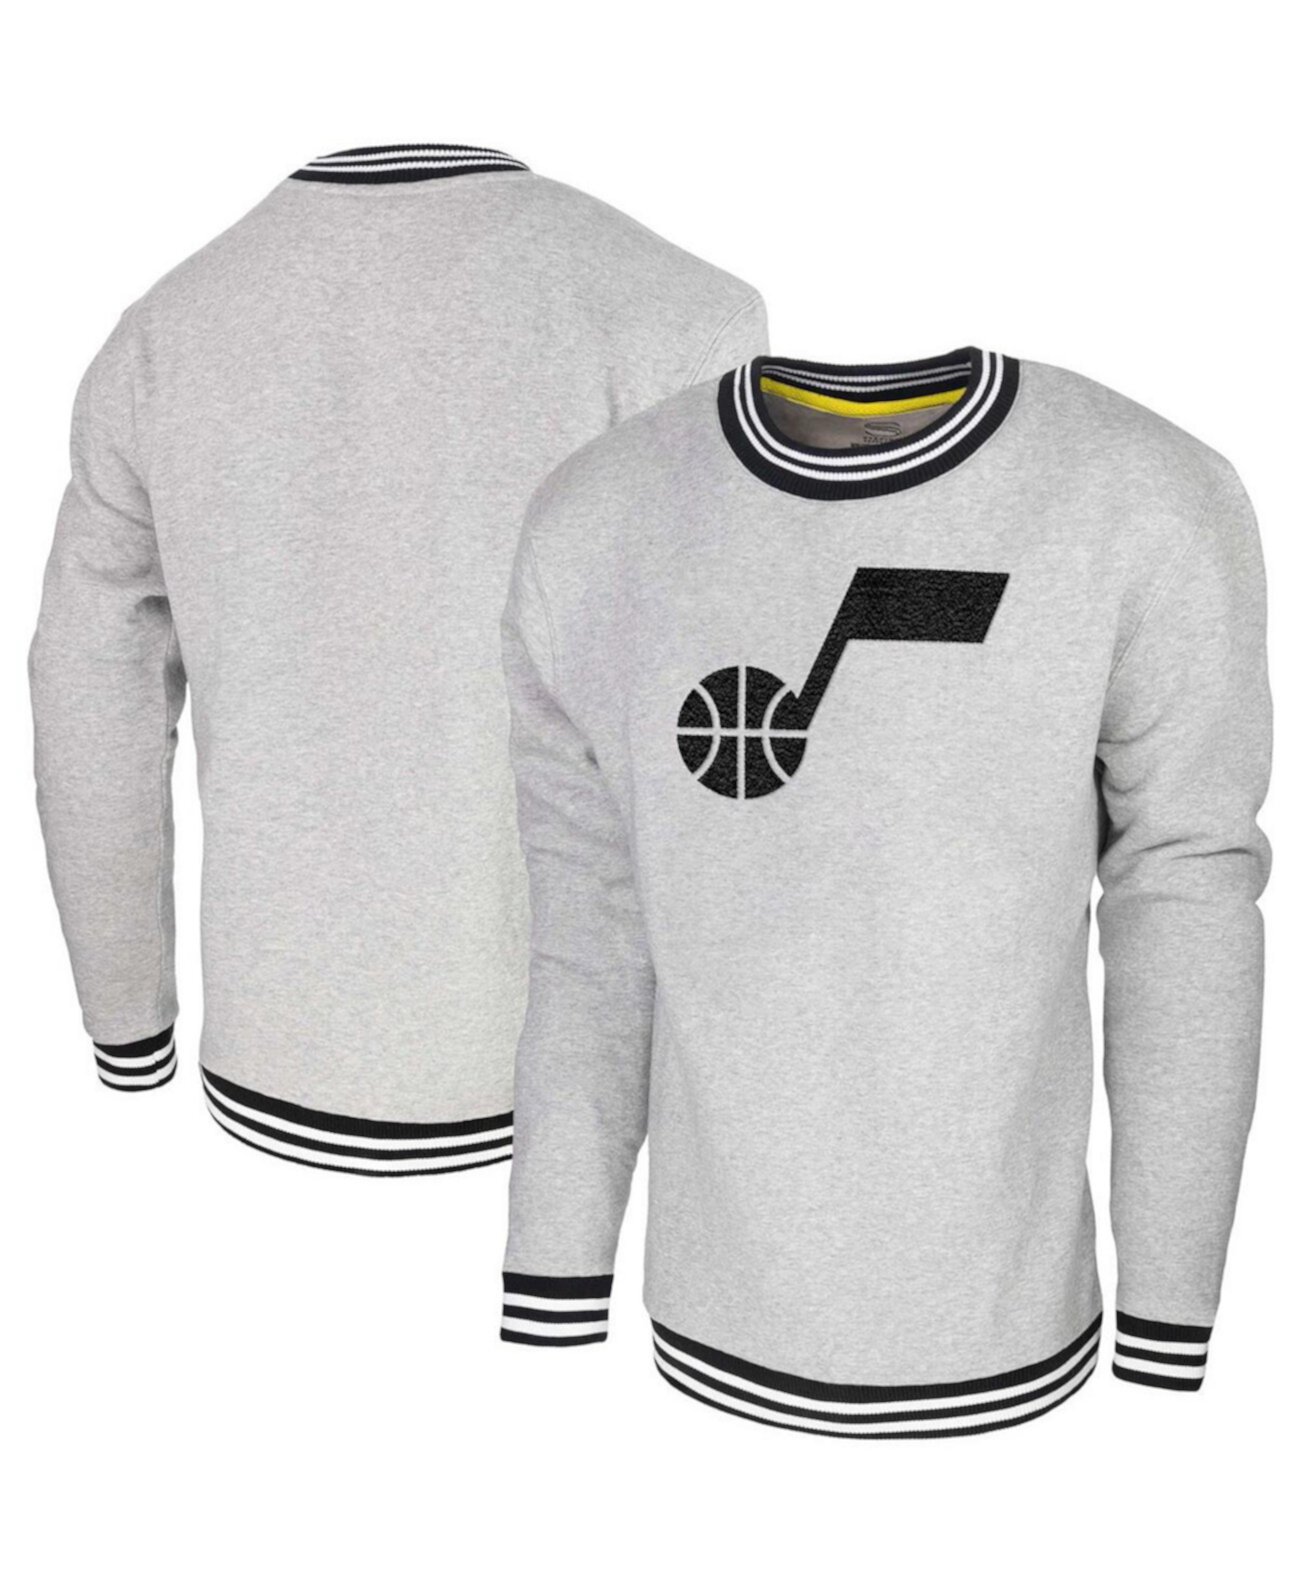 Мужской пуловер с капюшоном цвета Хизер Серый Юта Джаз Клуб Уровень Stadium Essentials